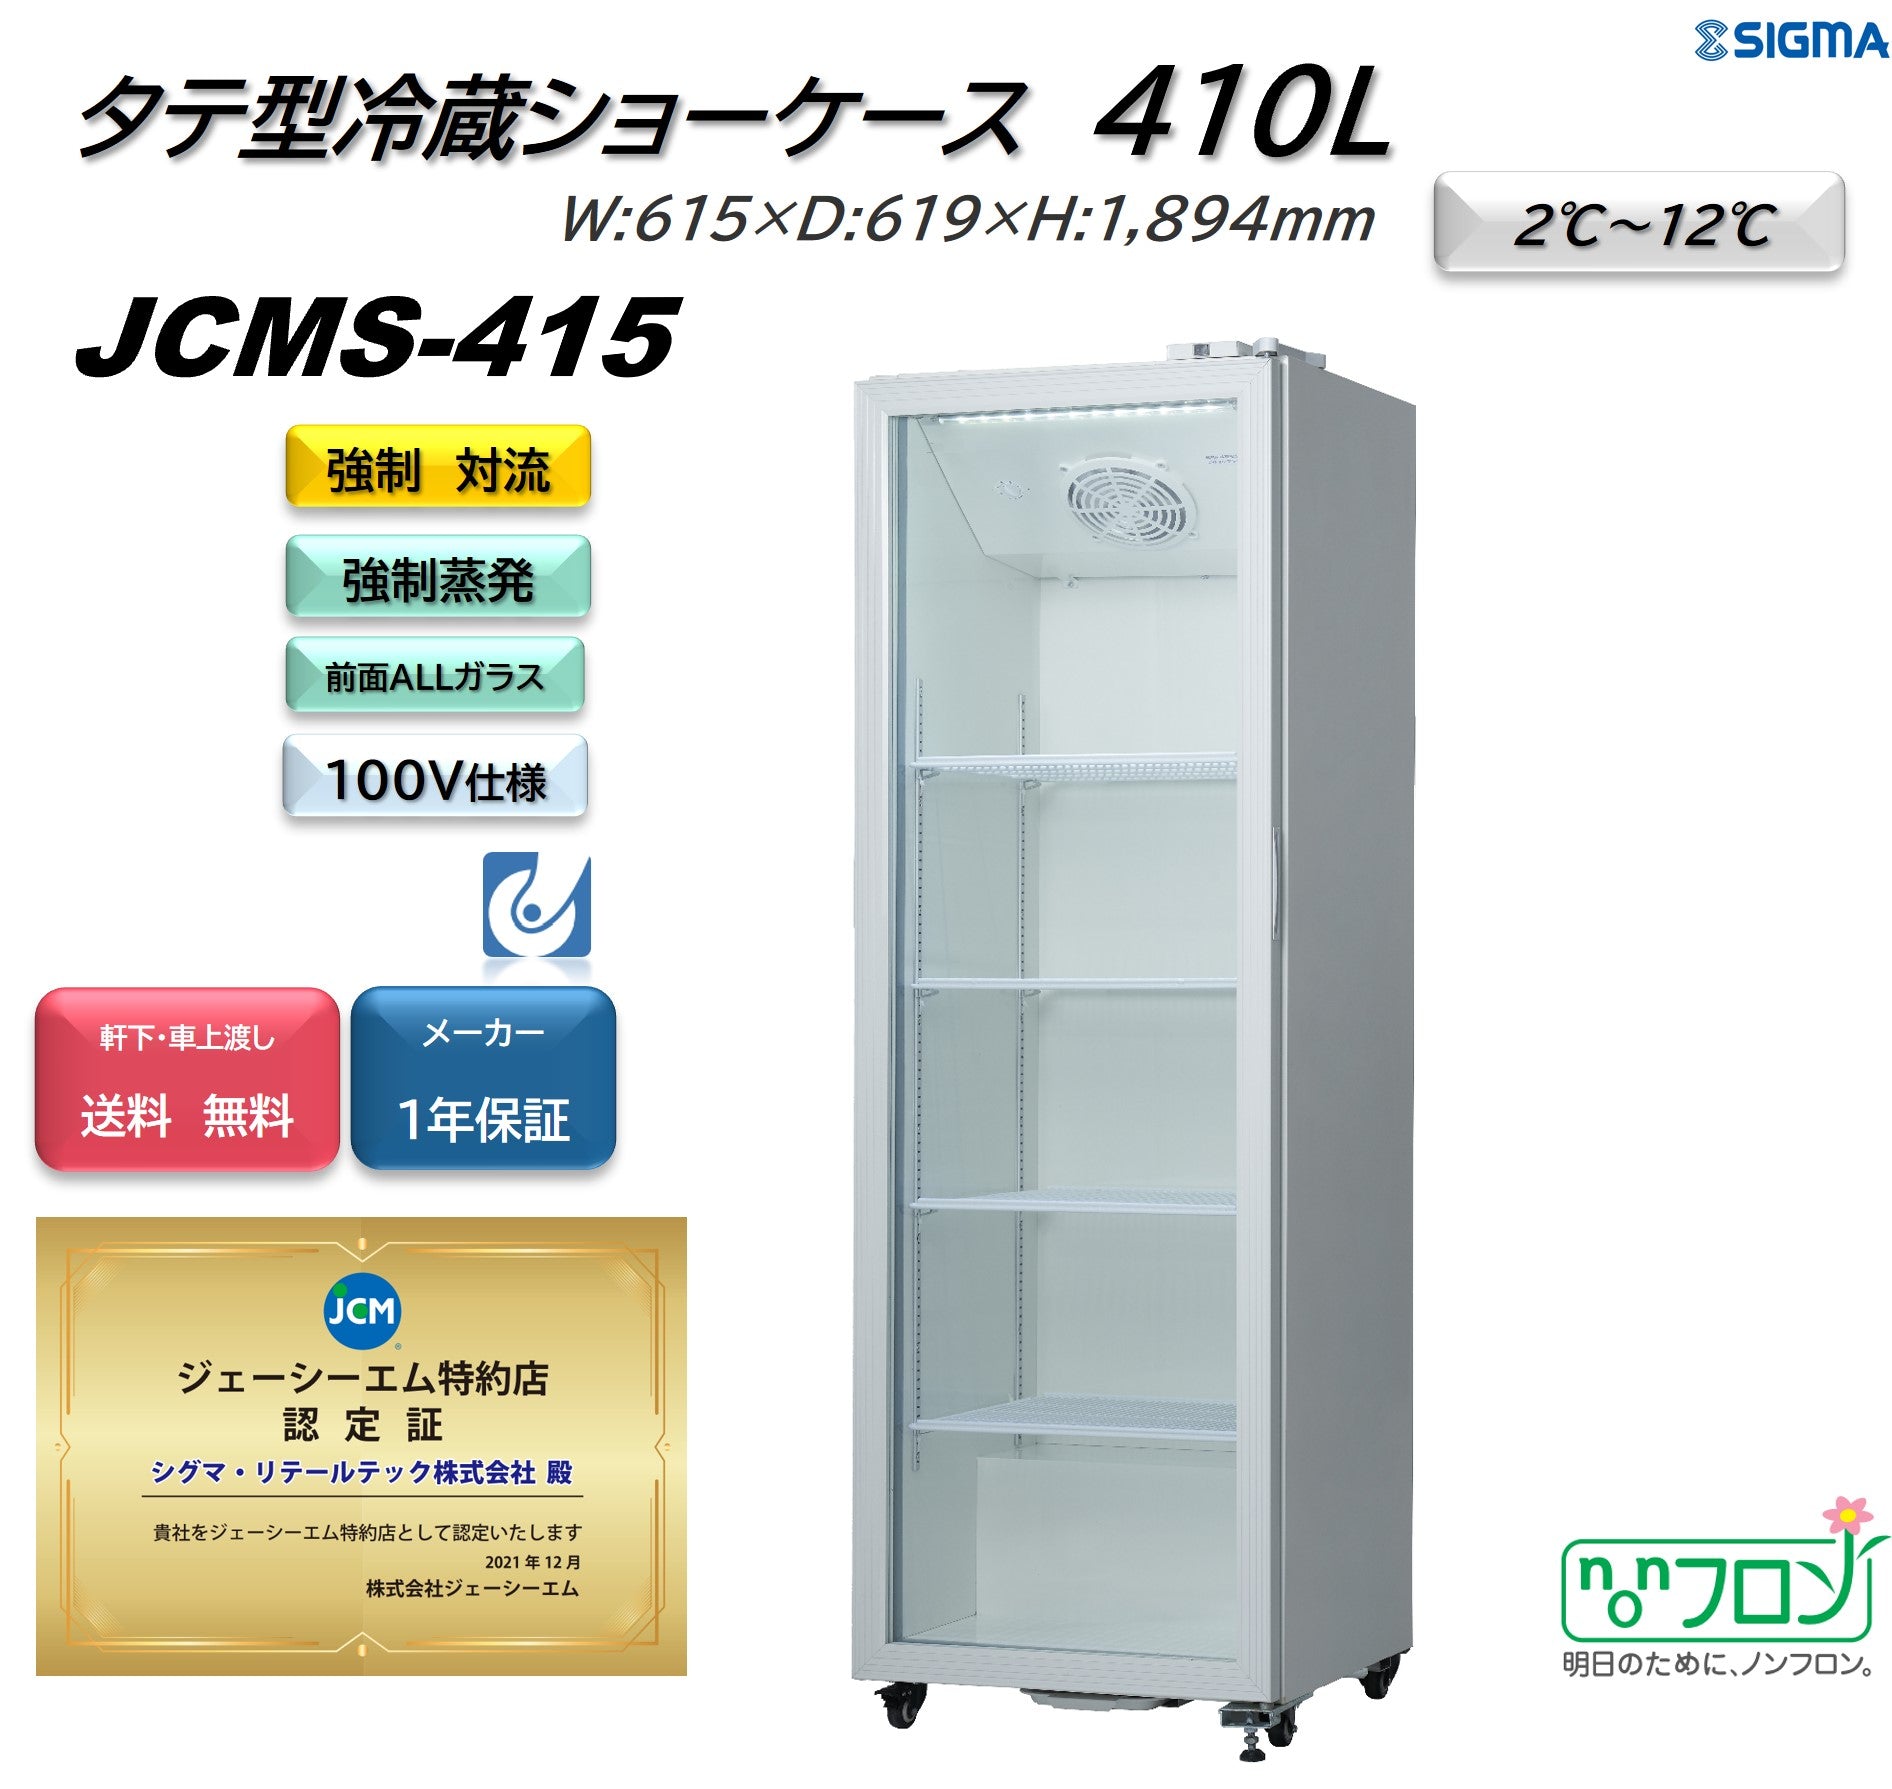 JCMS-415 タテ型冷蔵ショーケース／幅615×奥行619×高さ1,894